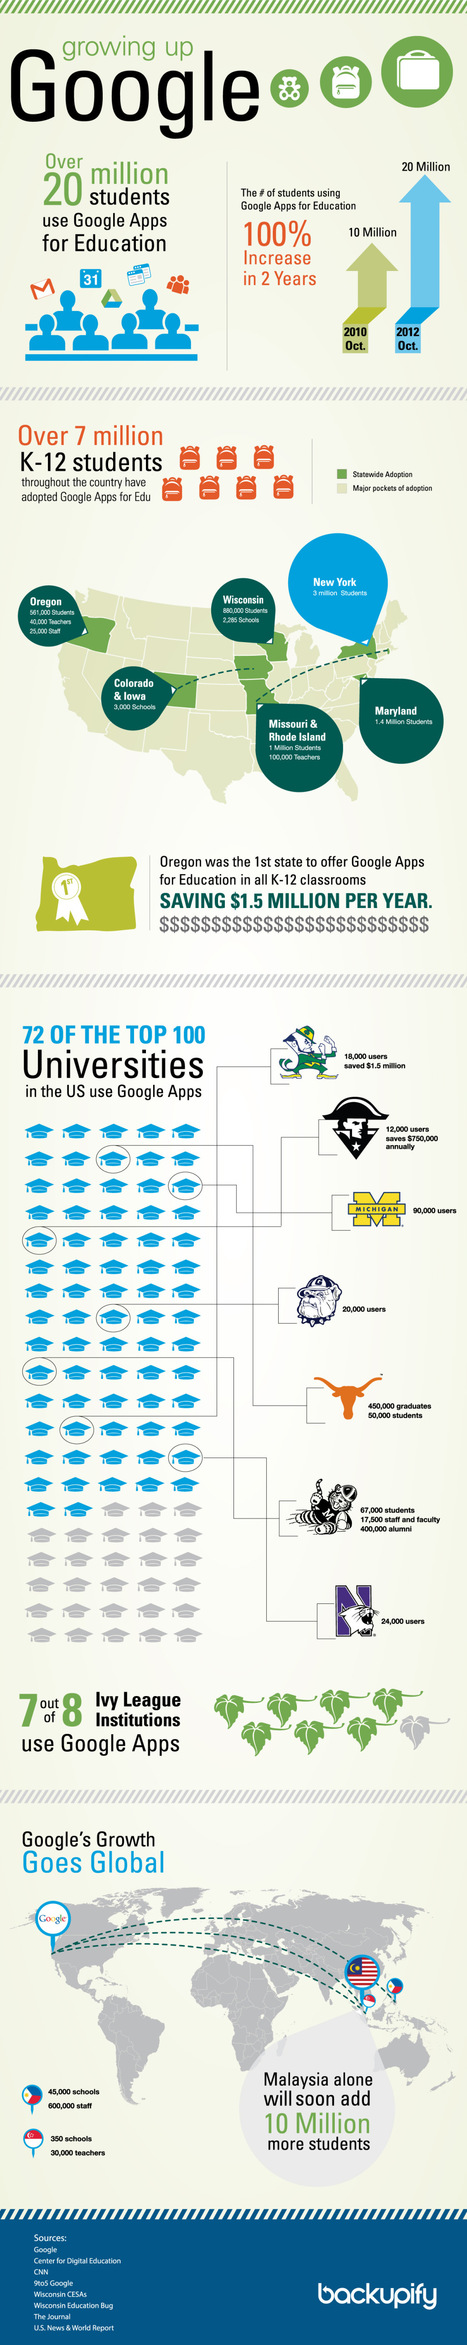 Schooled by Google: How Google Apps is penetrating education [infographic] | Elearning, pédagogie, technologie et numérique... | Scoop.it